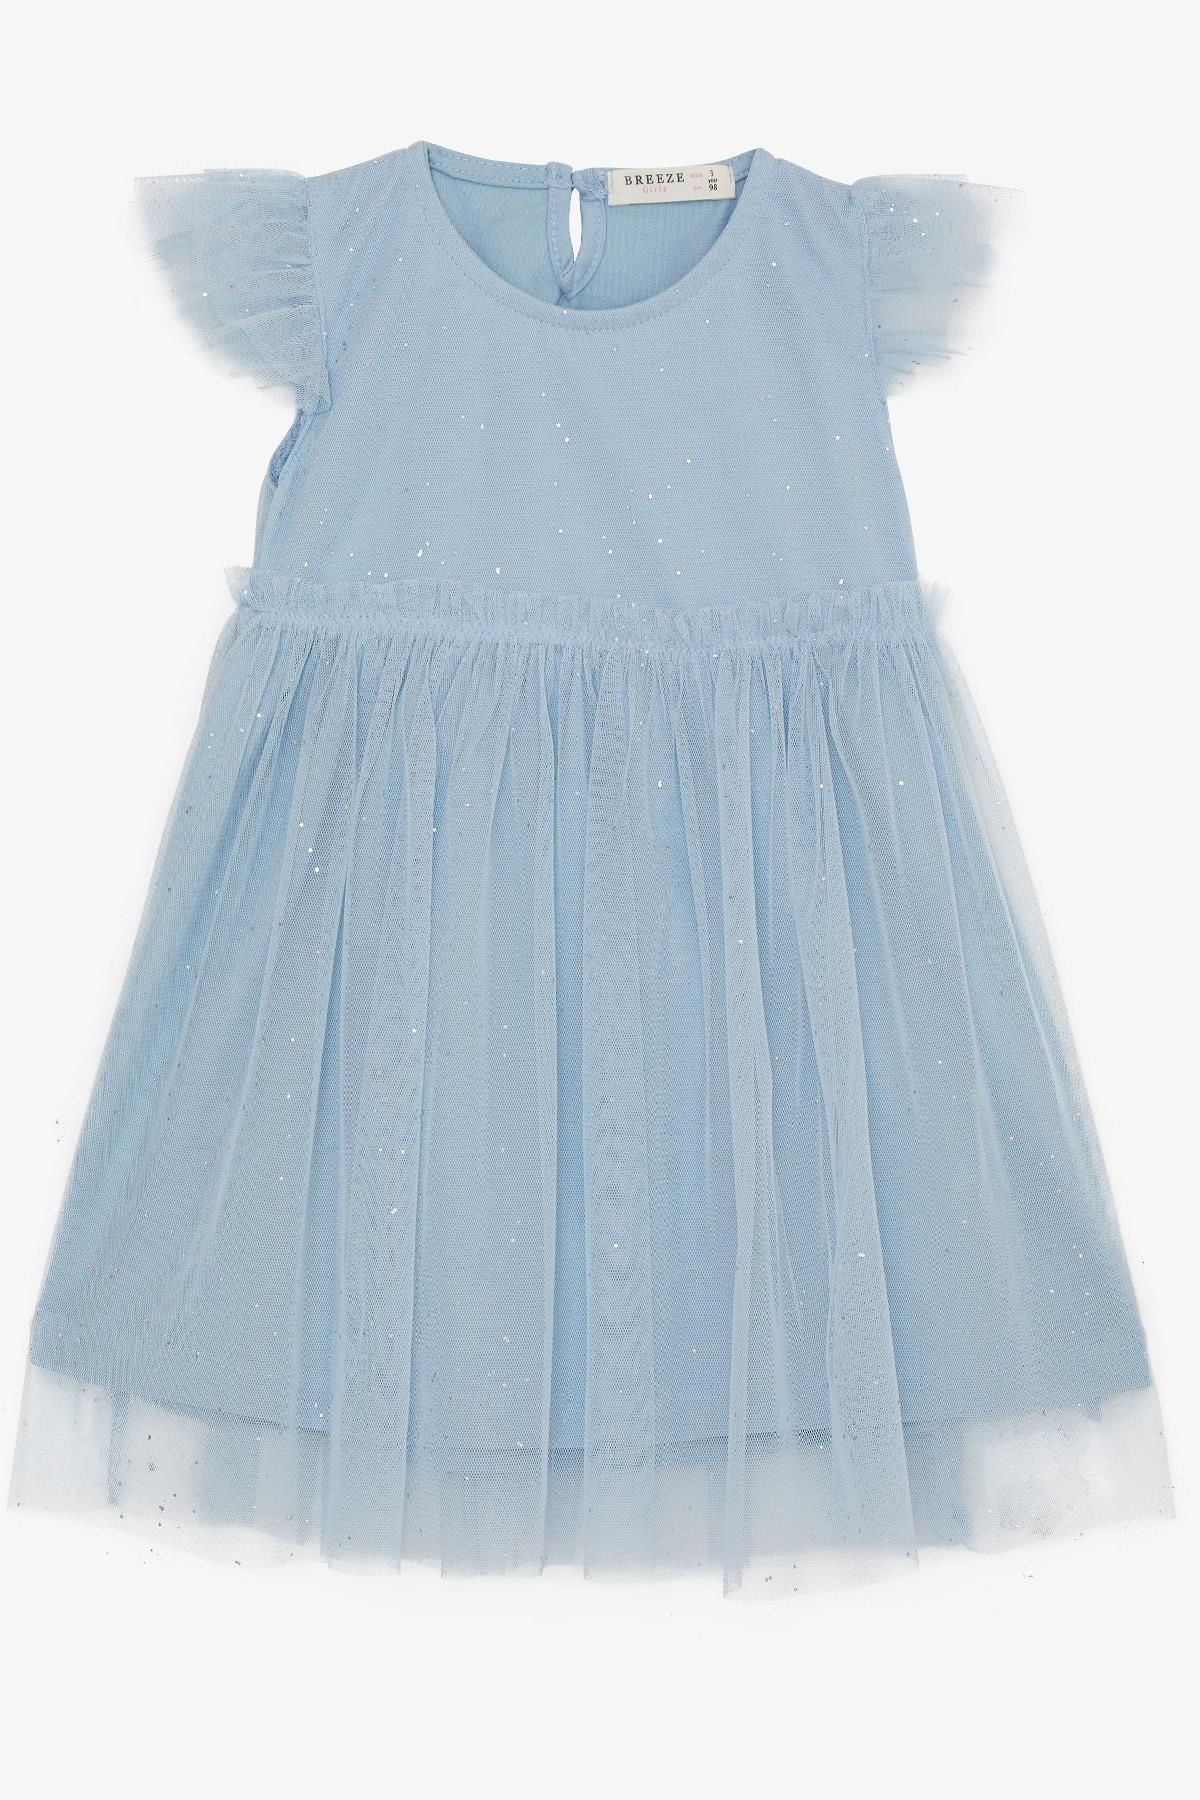 Breeze Kız Çocuk Elbise Simli Tüllü Fırfırlı 3-7 Yaş, Mavi